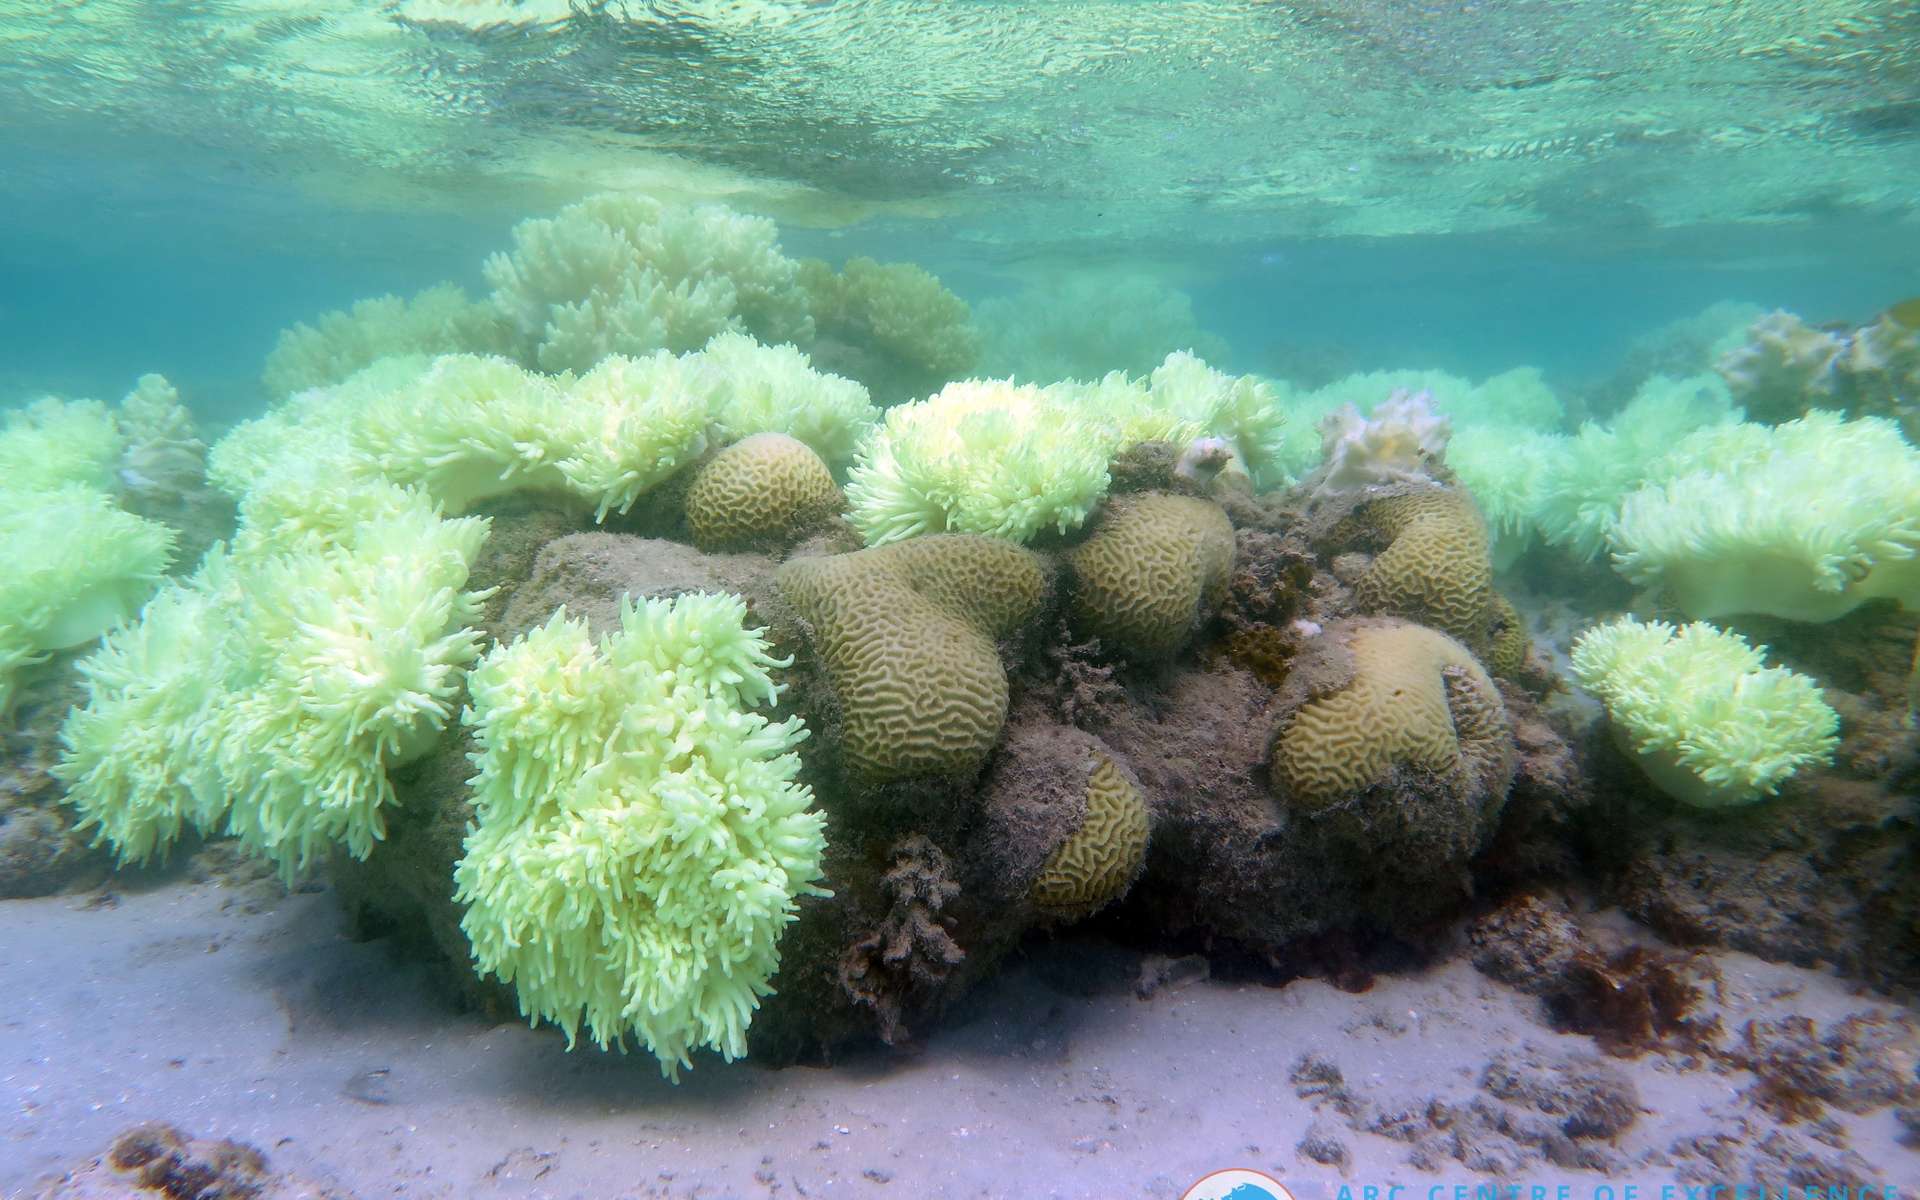 La Grande Barrière de corail est touchée par le blanchissement. Elle consiste en une longue série de récifs le long de la côte est de l'Australie, s'étalant sur plus de 2.600 km. Ceux-ci abritent une très grande variété d'espèces. © Dorothea Bender, Champ for ARC Centre of Excellence for Coral Reef Studies